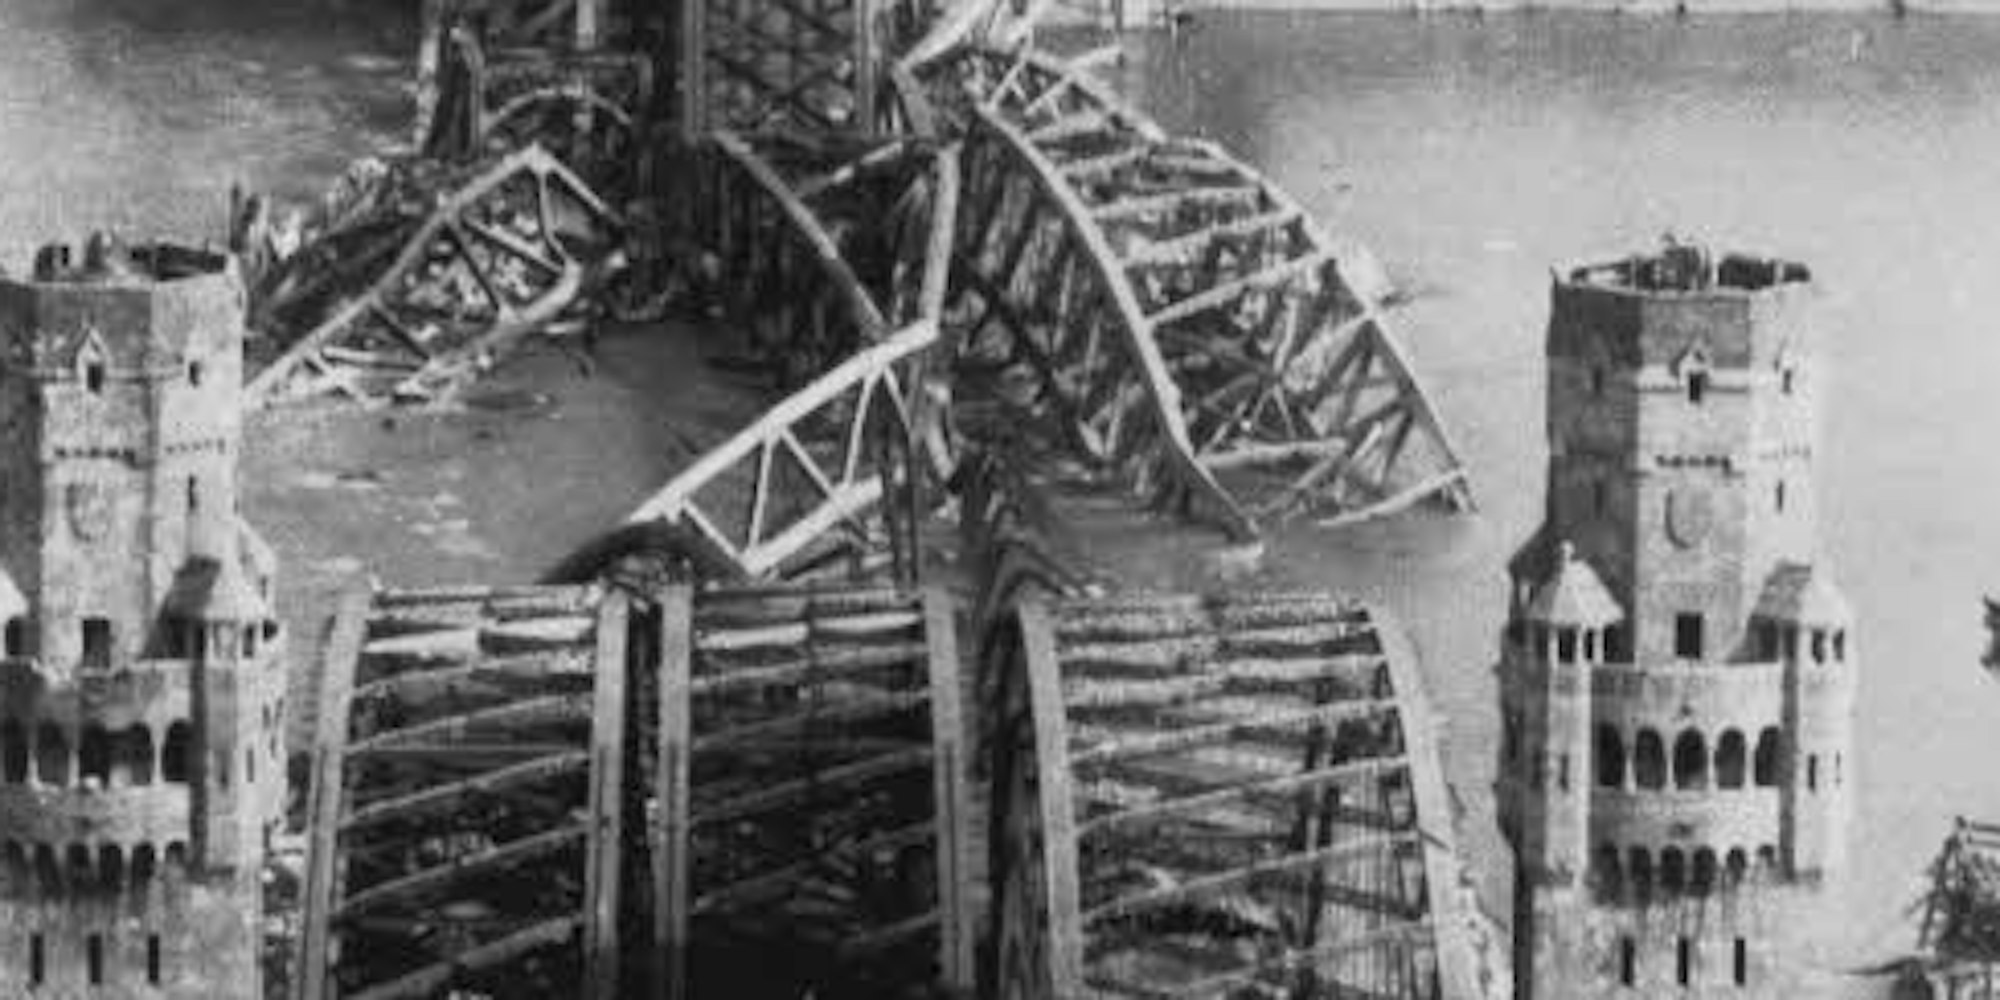 Die Hohenzollernbrücke nach ihrer Zerstörung. Das Bild wurde am 7. April 1945 aufgenommen.